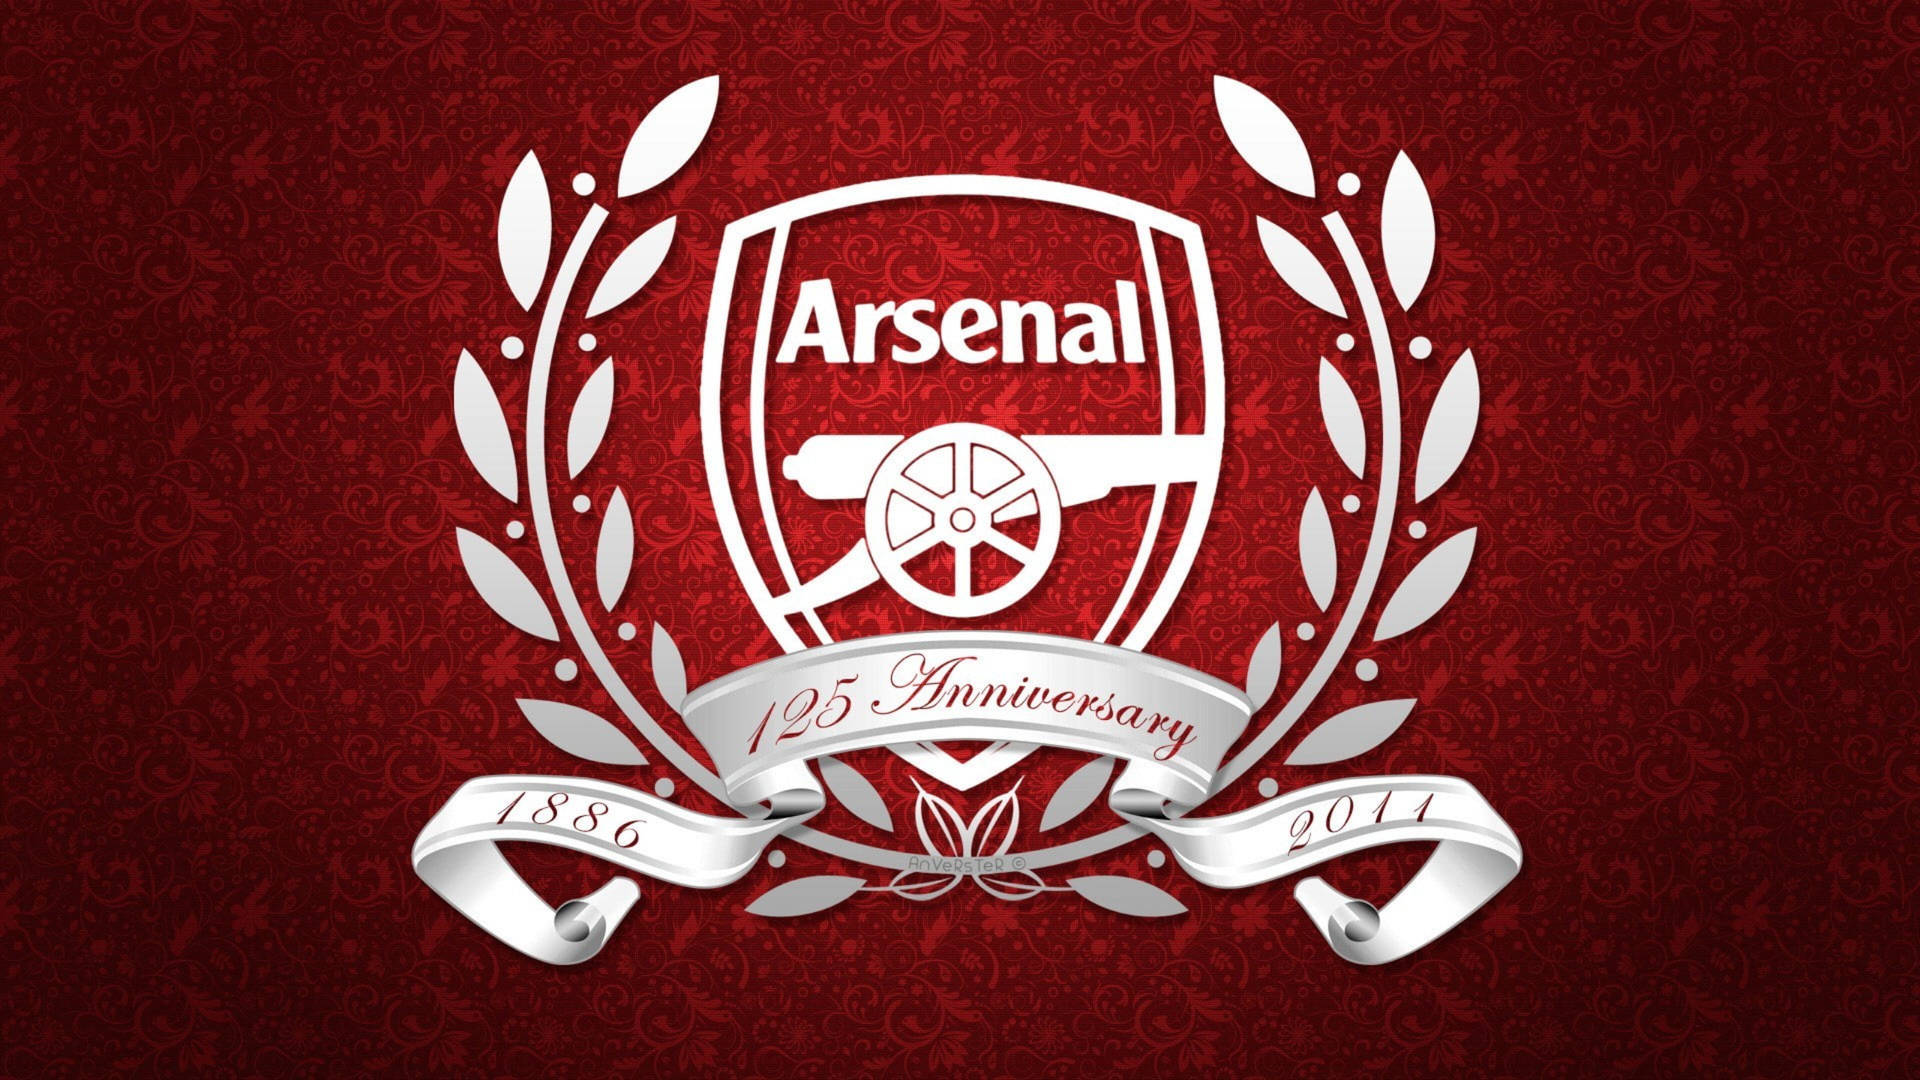 Arsenal 125 Anniversary